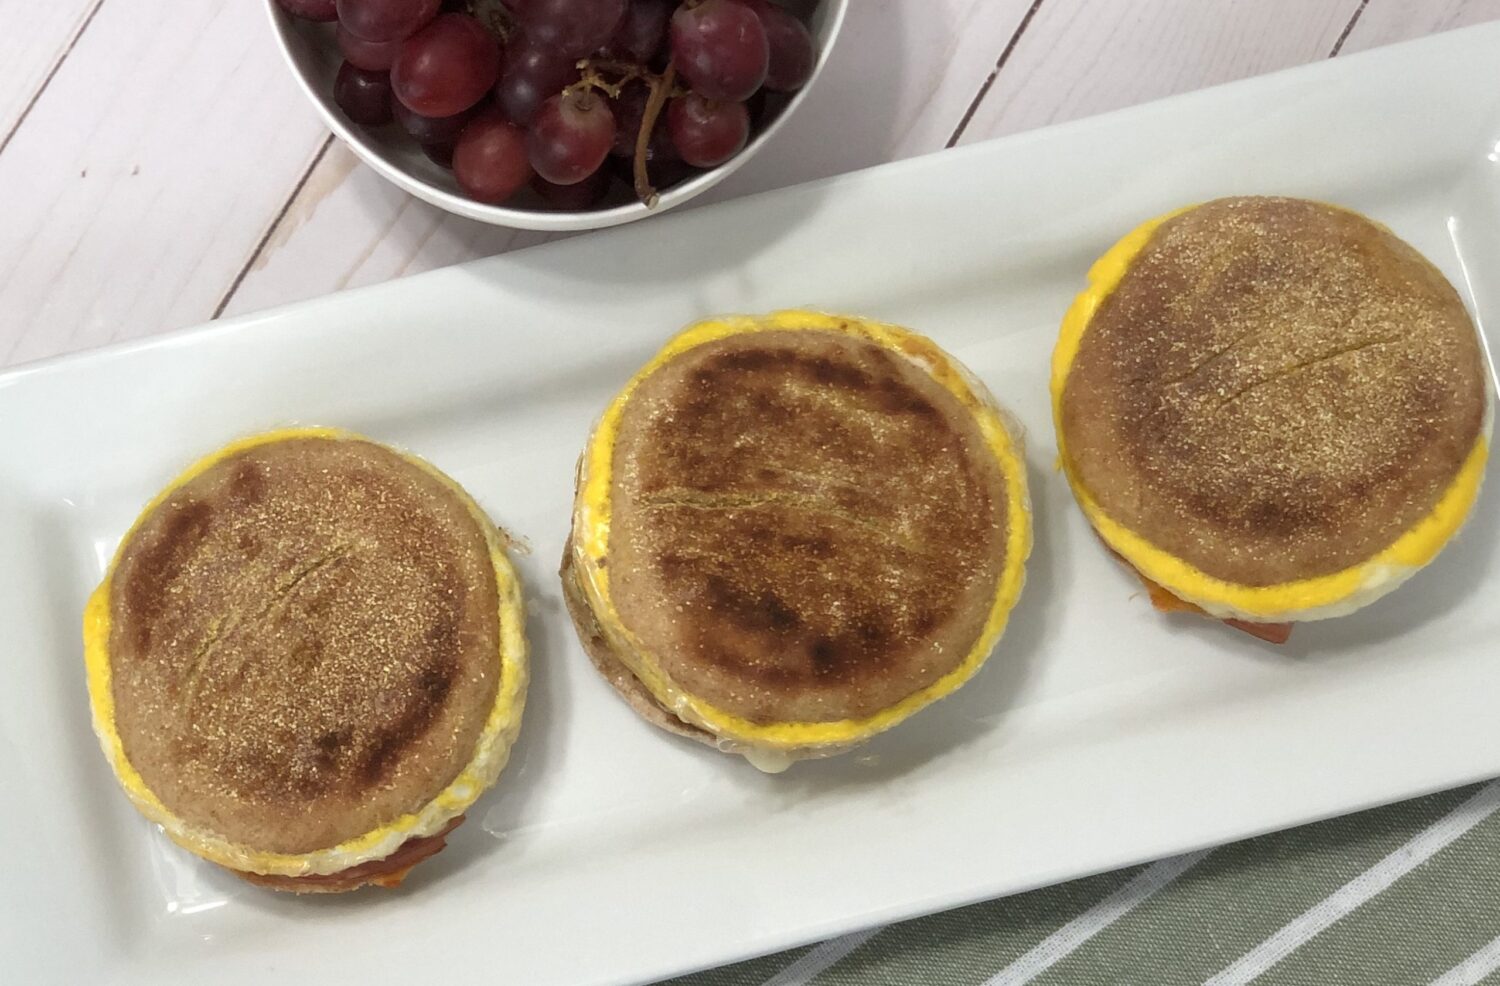 Gourmet Breakfast Sandwich Ideas for Hamilton Beach Dual Breakfast Sandwich  Maker by BikeSunshineGirl - Issuu